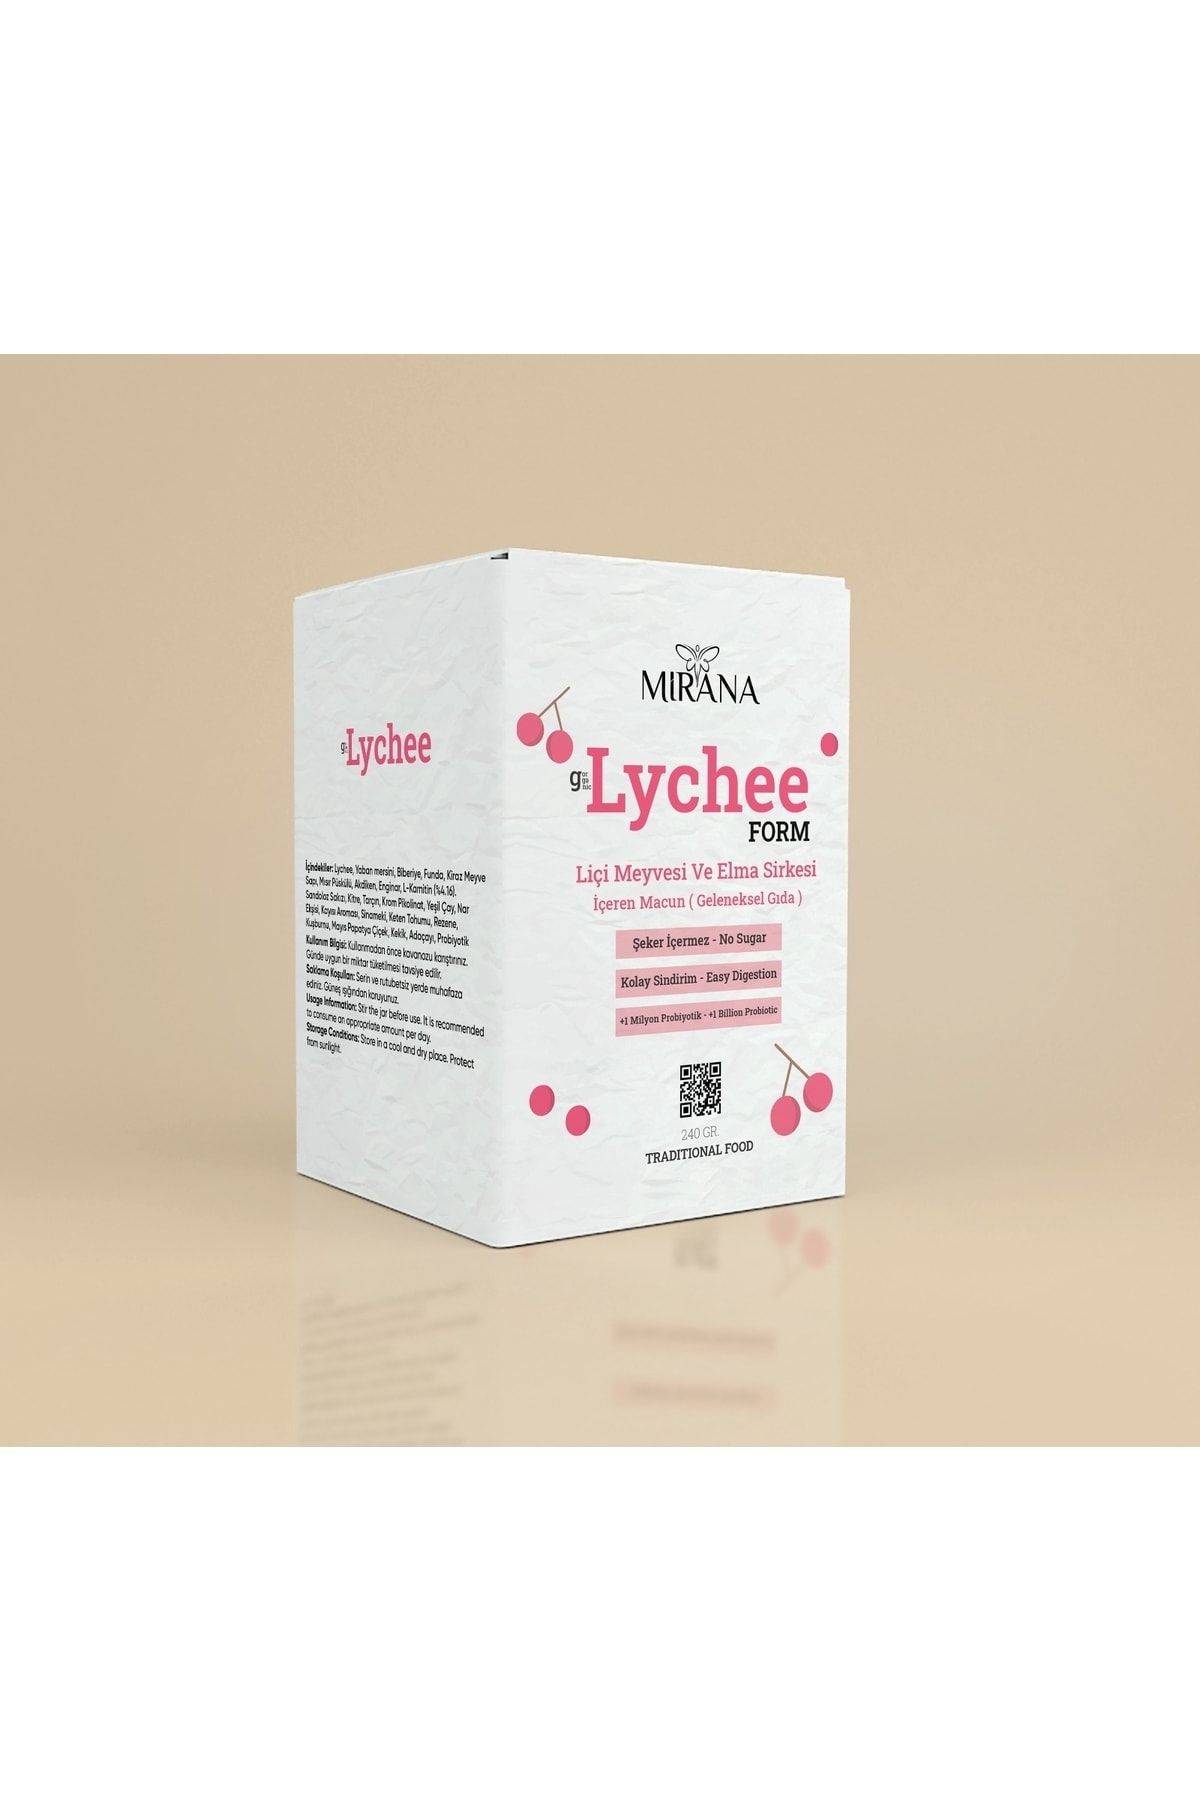 MİRANA Organic Lychee Form Liçi